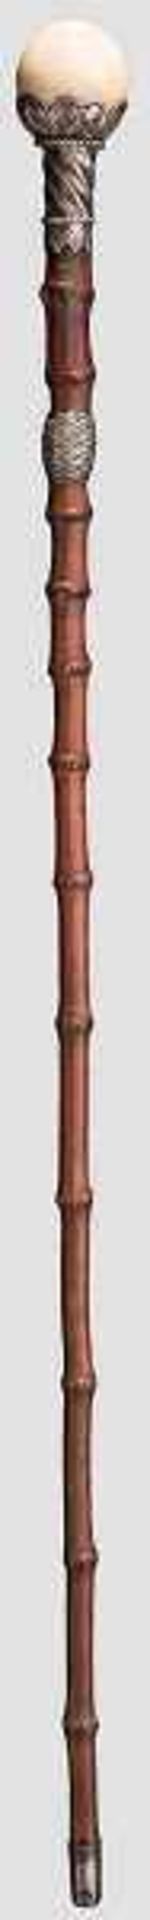 Gehstock mit Elfenbeinknauf, England, 2. Hälfte 19. Jhdt. Runder Knauf in Form einer Kugel aus